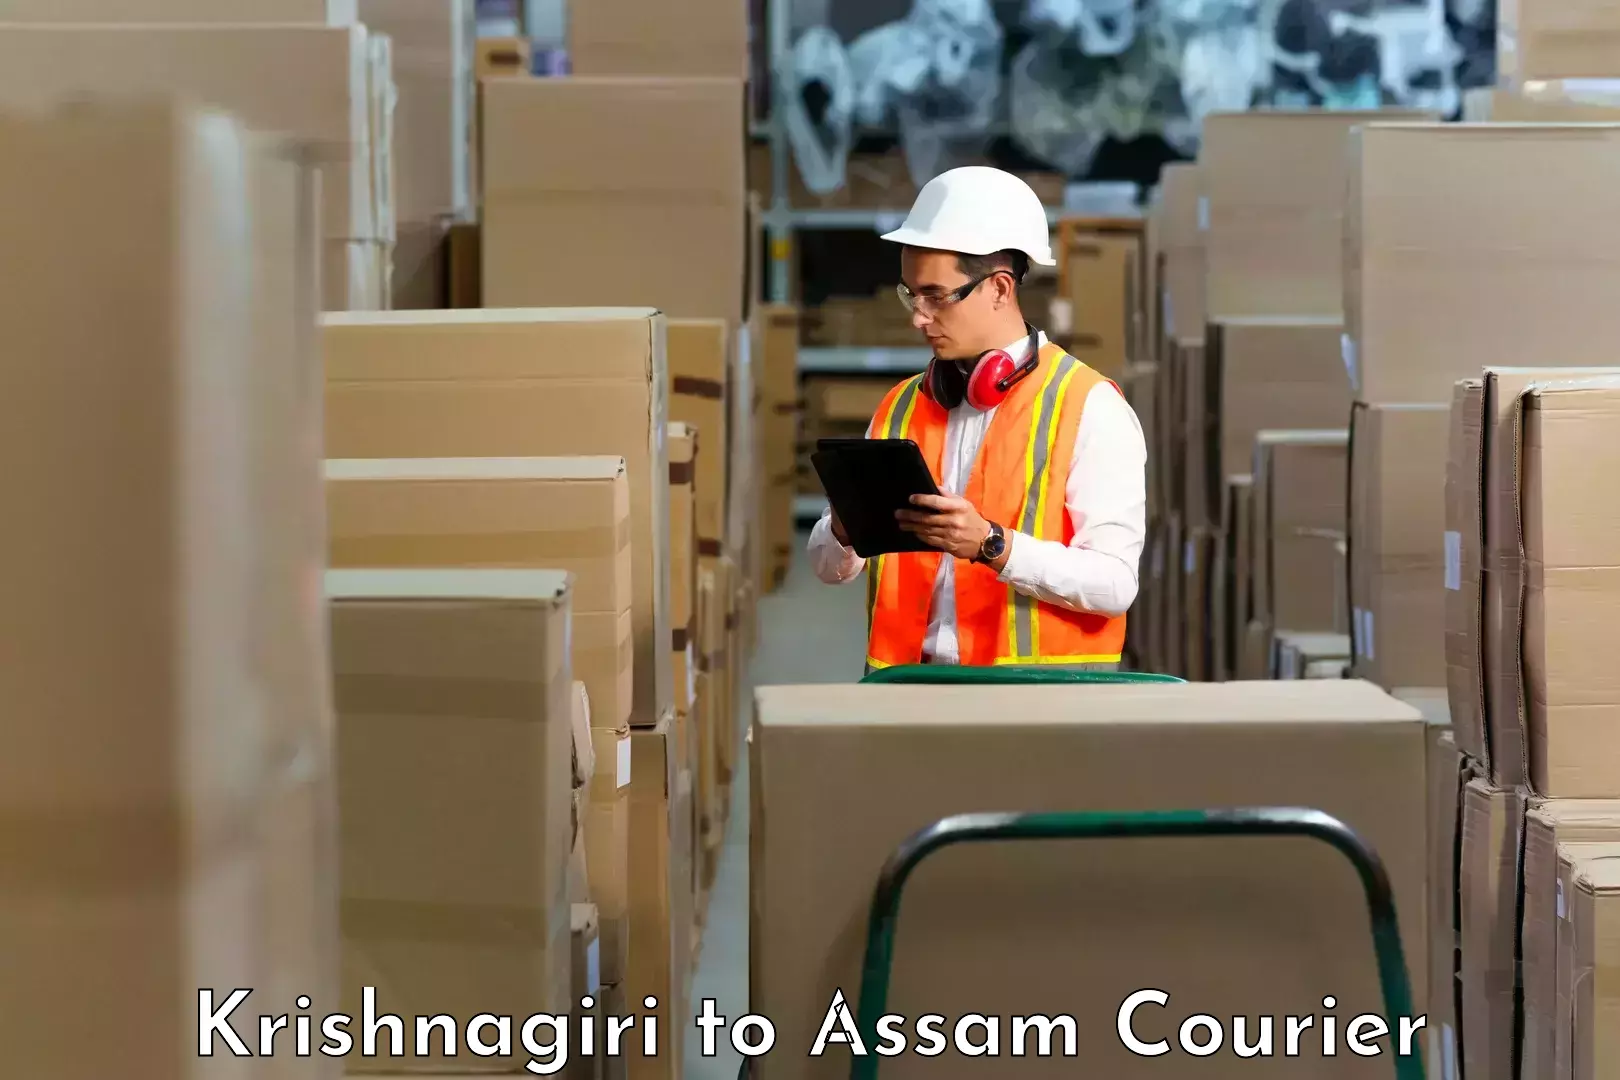 High-performance logistics Krishnagiri to Assam